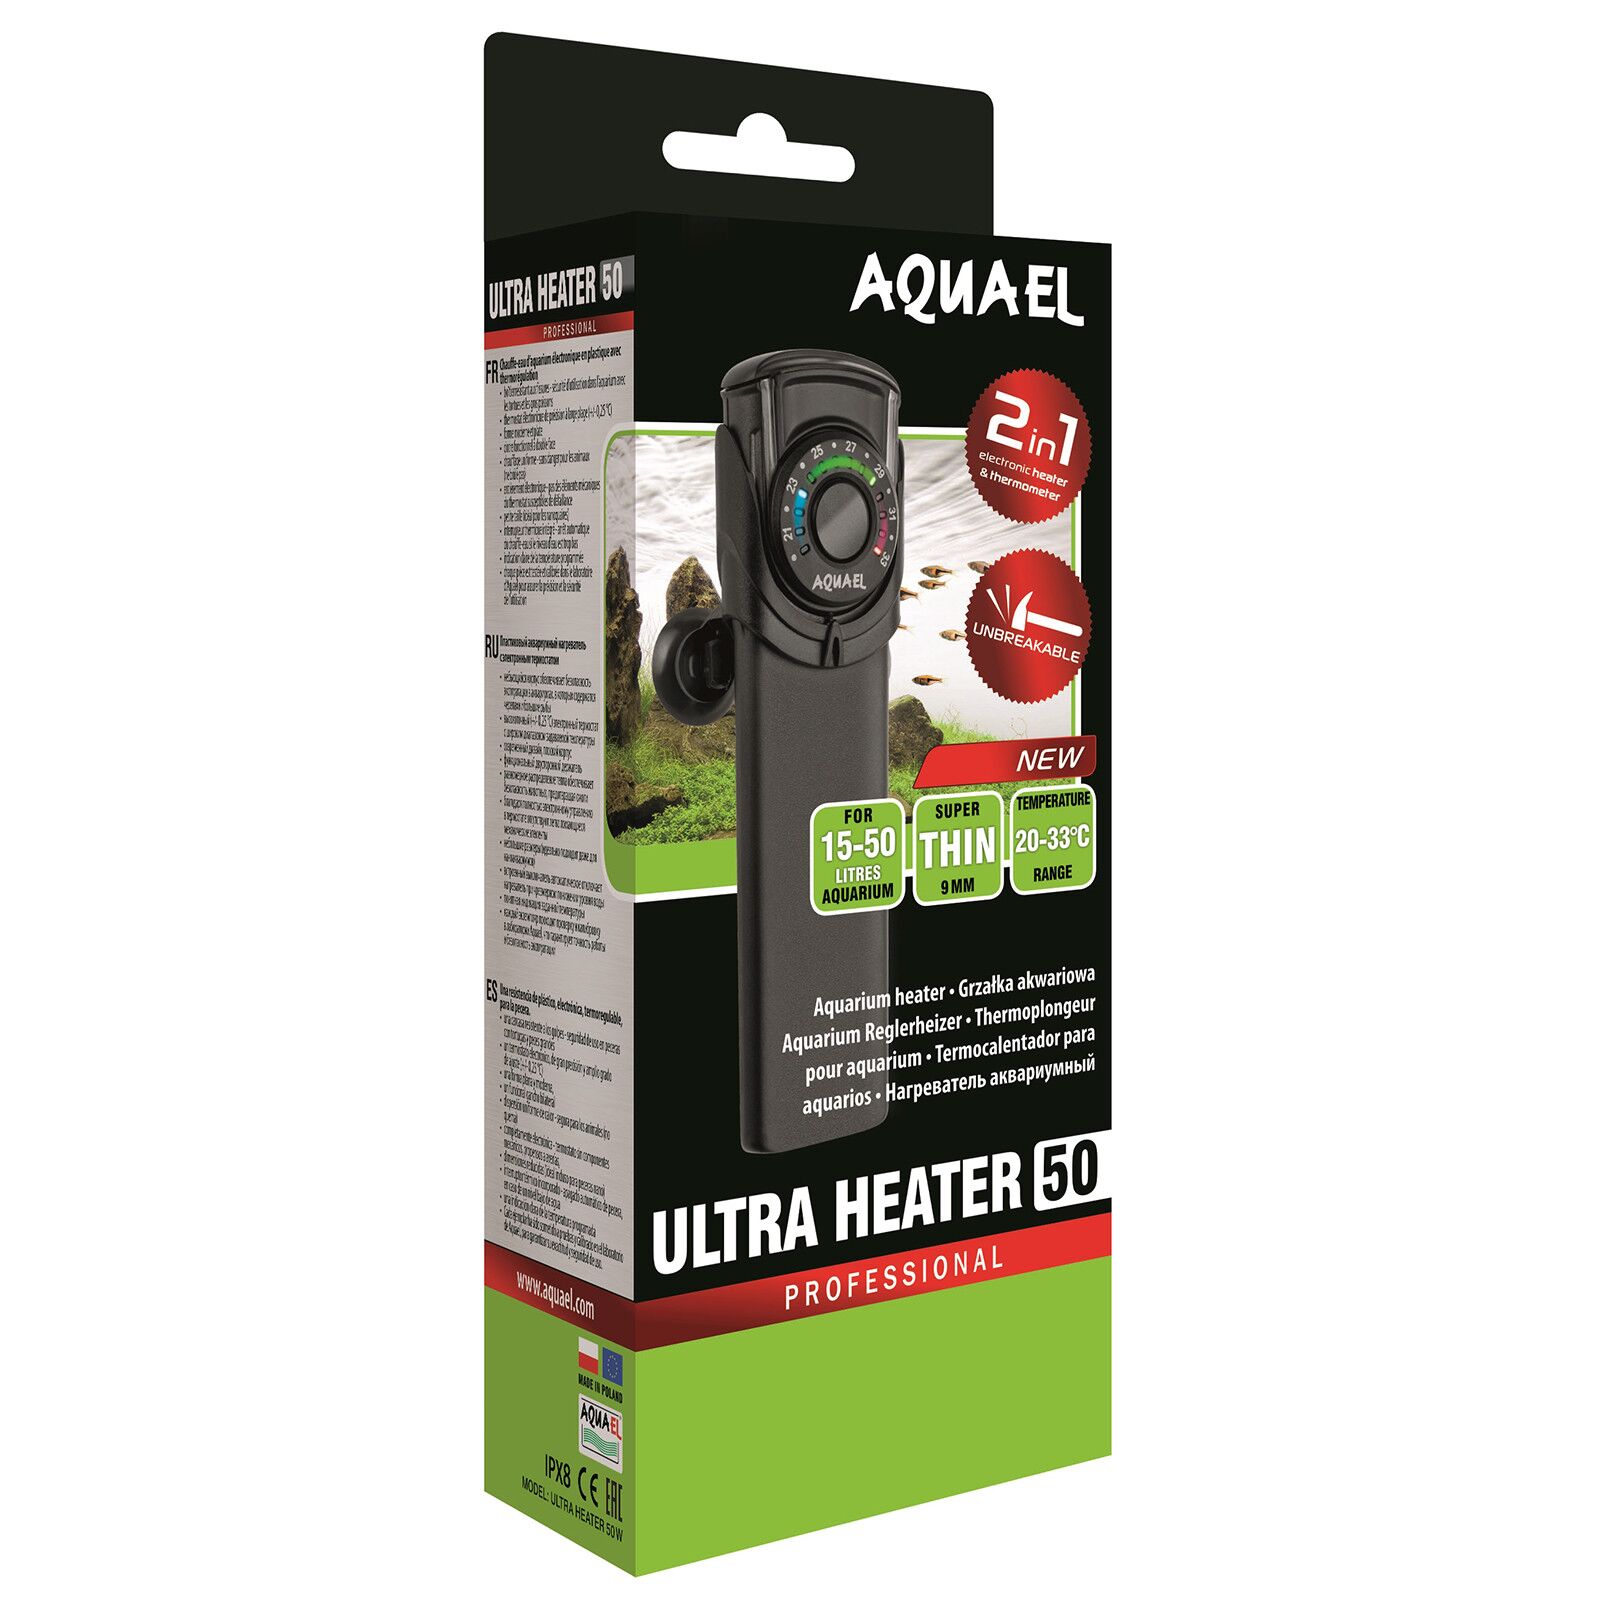 Aquael - Ultra Heater